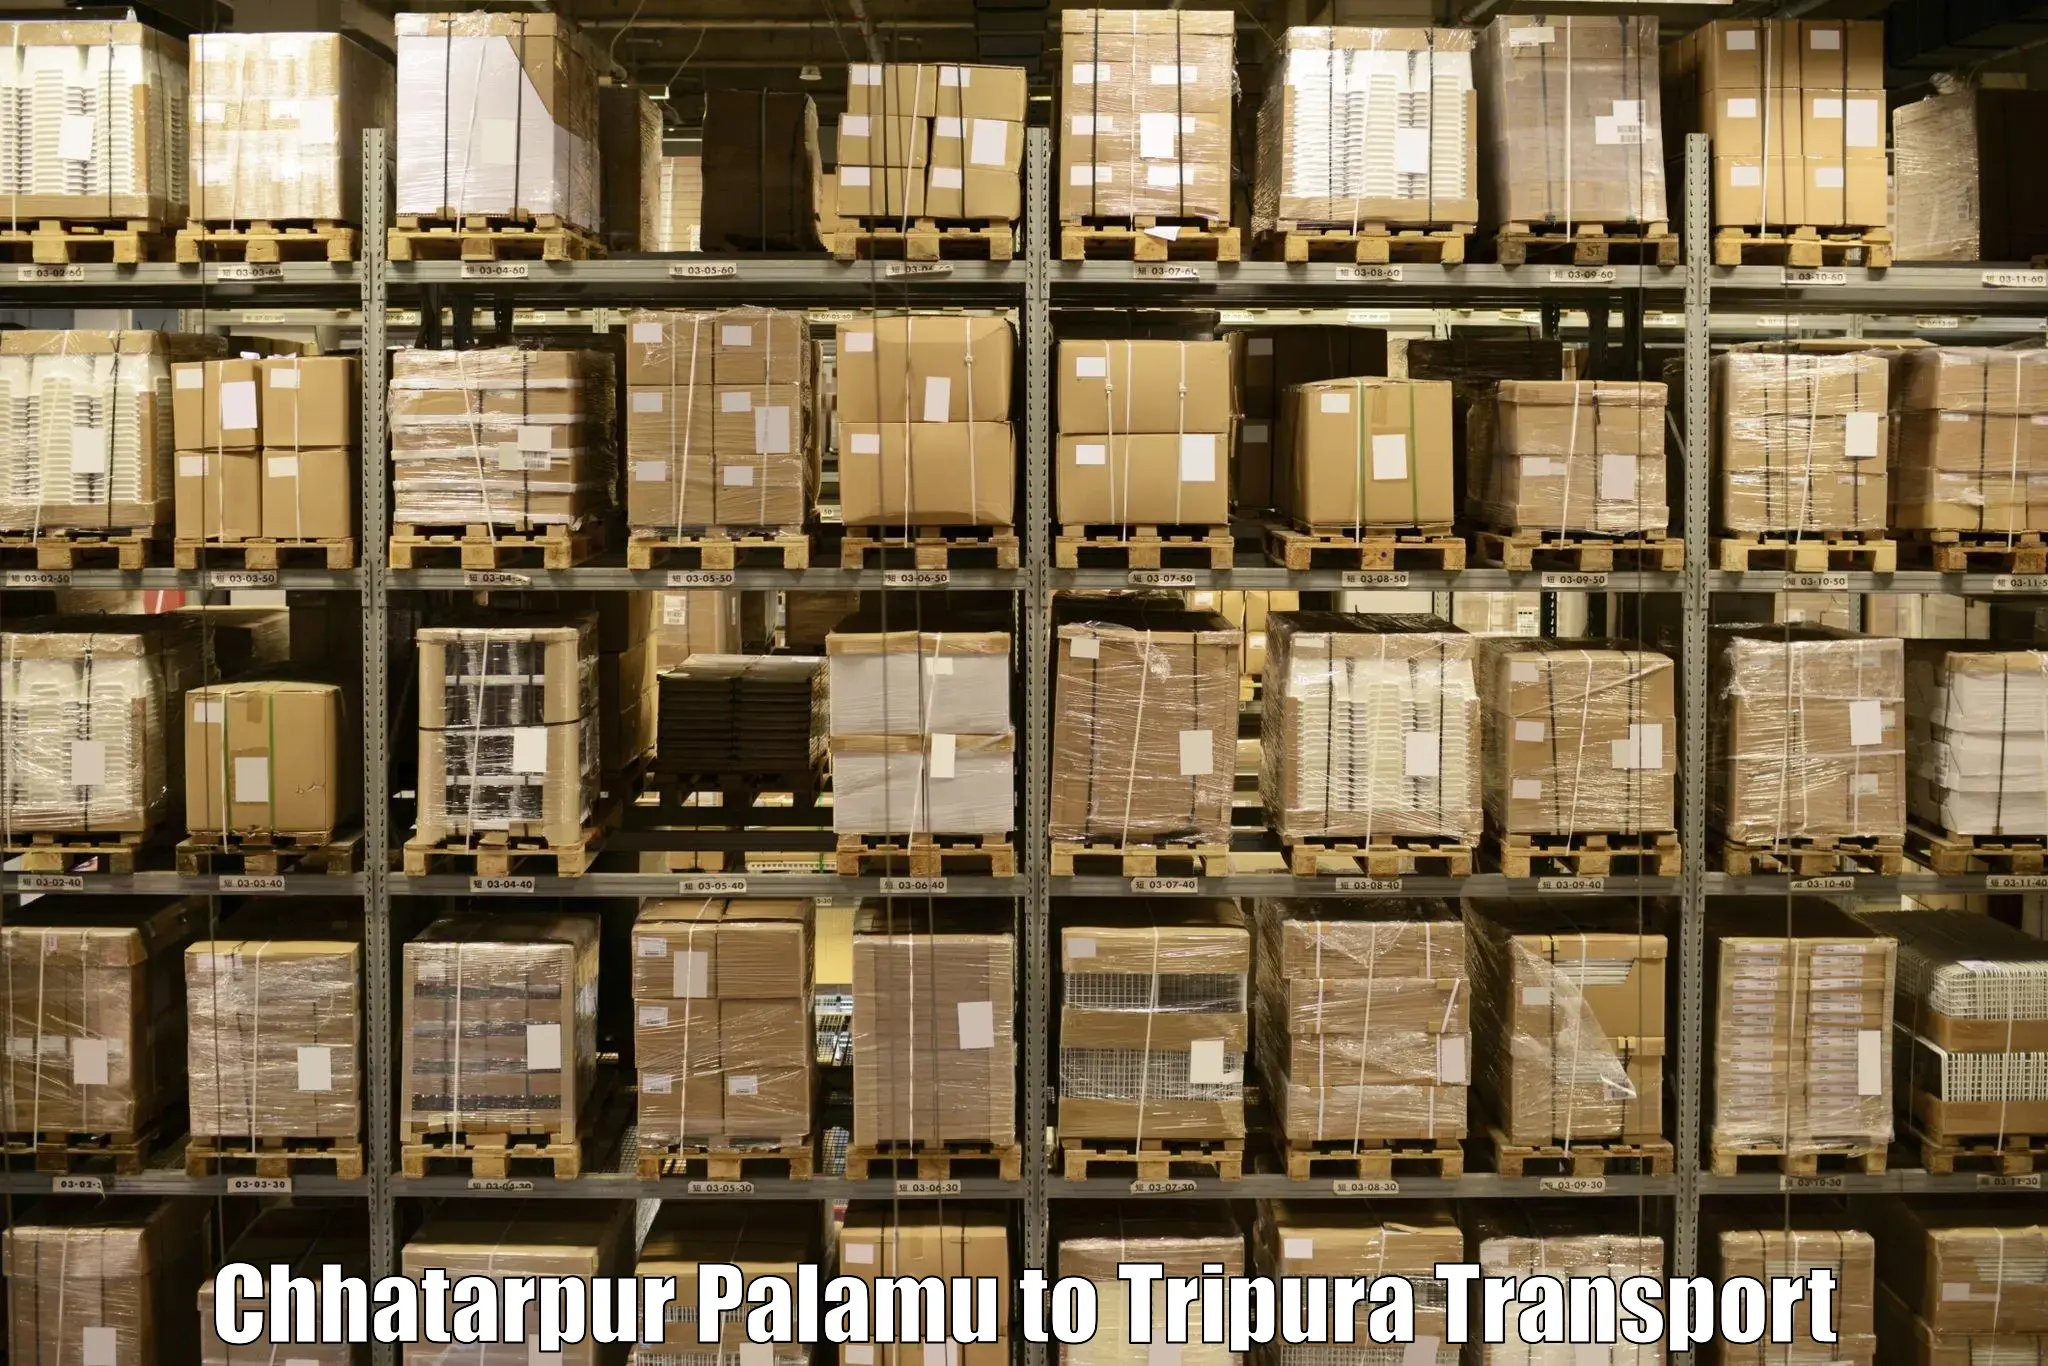 Transportation services Chhatarpur Palamu to Amarpur